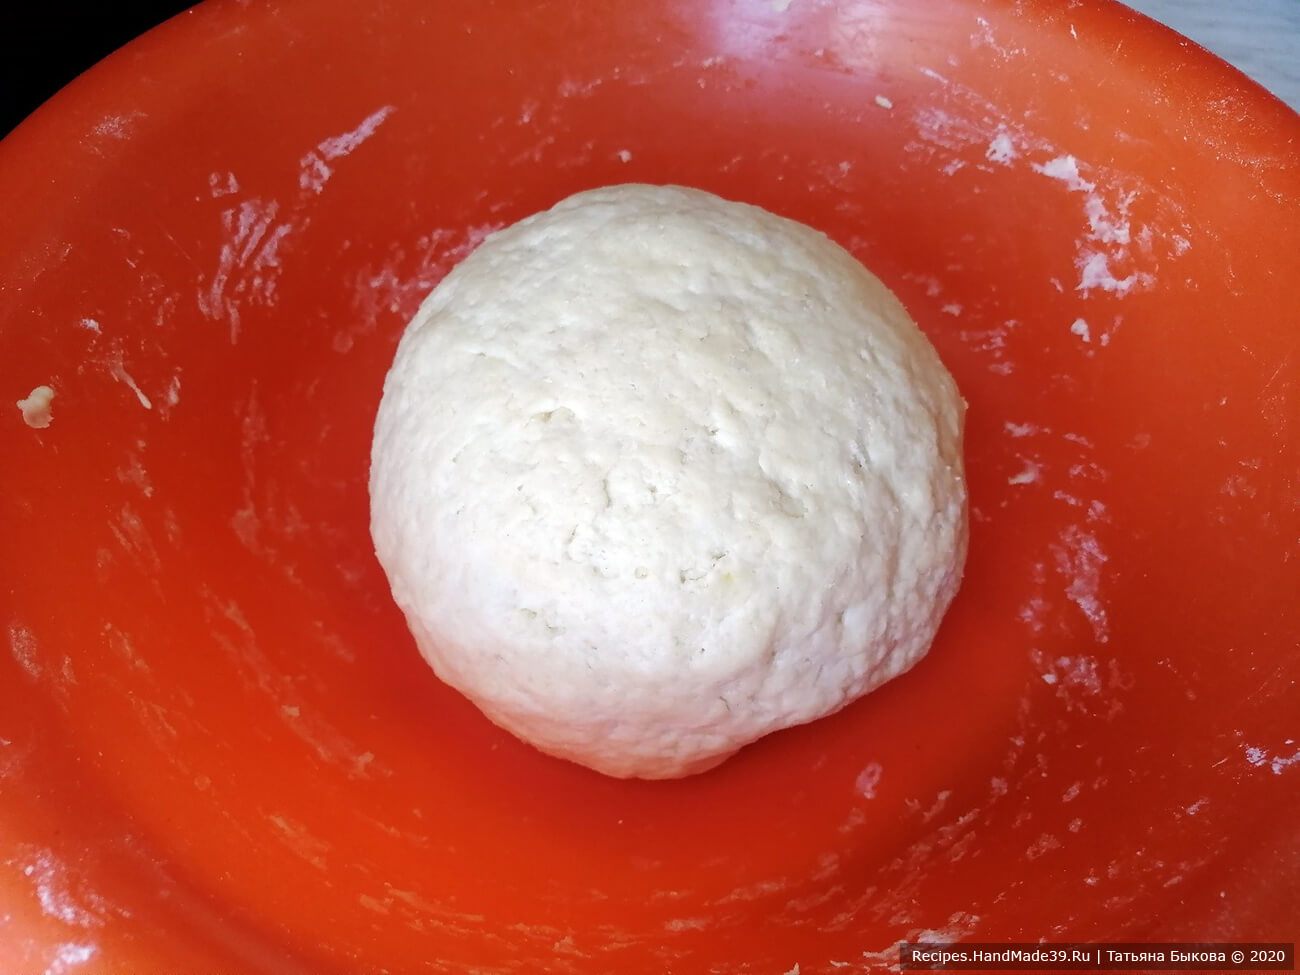 Аккуратно вымесить тесто. Сформовать из него шар, накрыть пищевой плёнкой или чистым полотенцем, положить в холодильник минимум на 4 часа, максимум на 24 часа